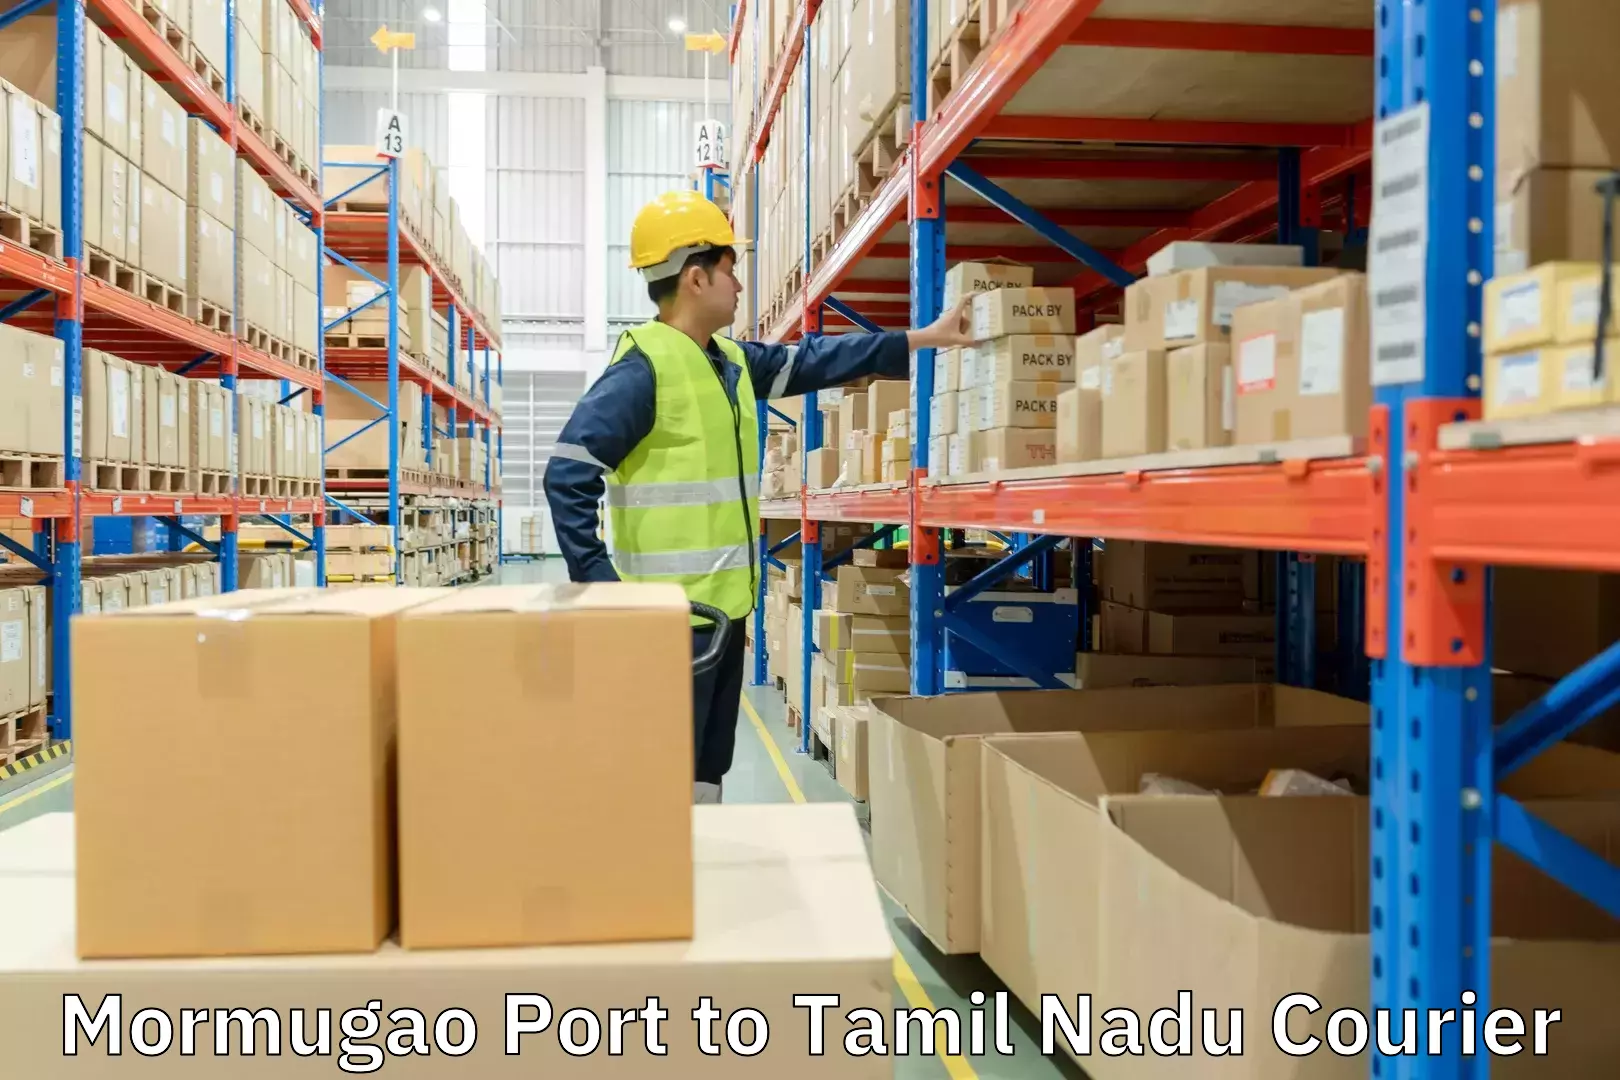 High-speed logistics services Mormugao Port to Tamil Nadu